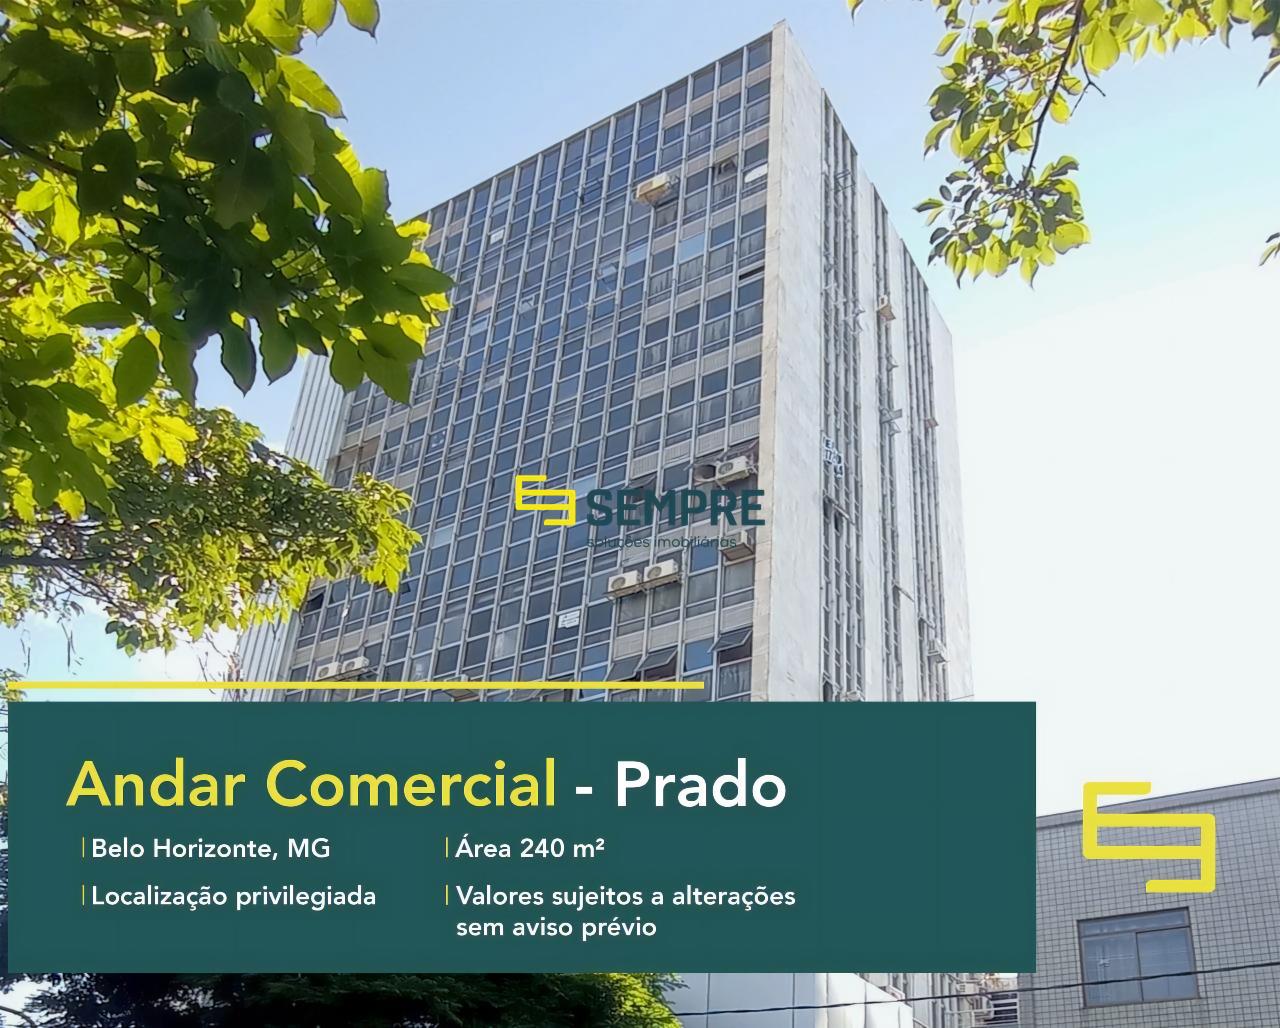 Andar comercial para alugar no Prado em Belo Horizonte, excelente localização. O estabelecimento comercial conta com área de 240 m².